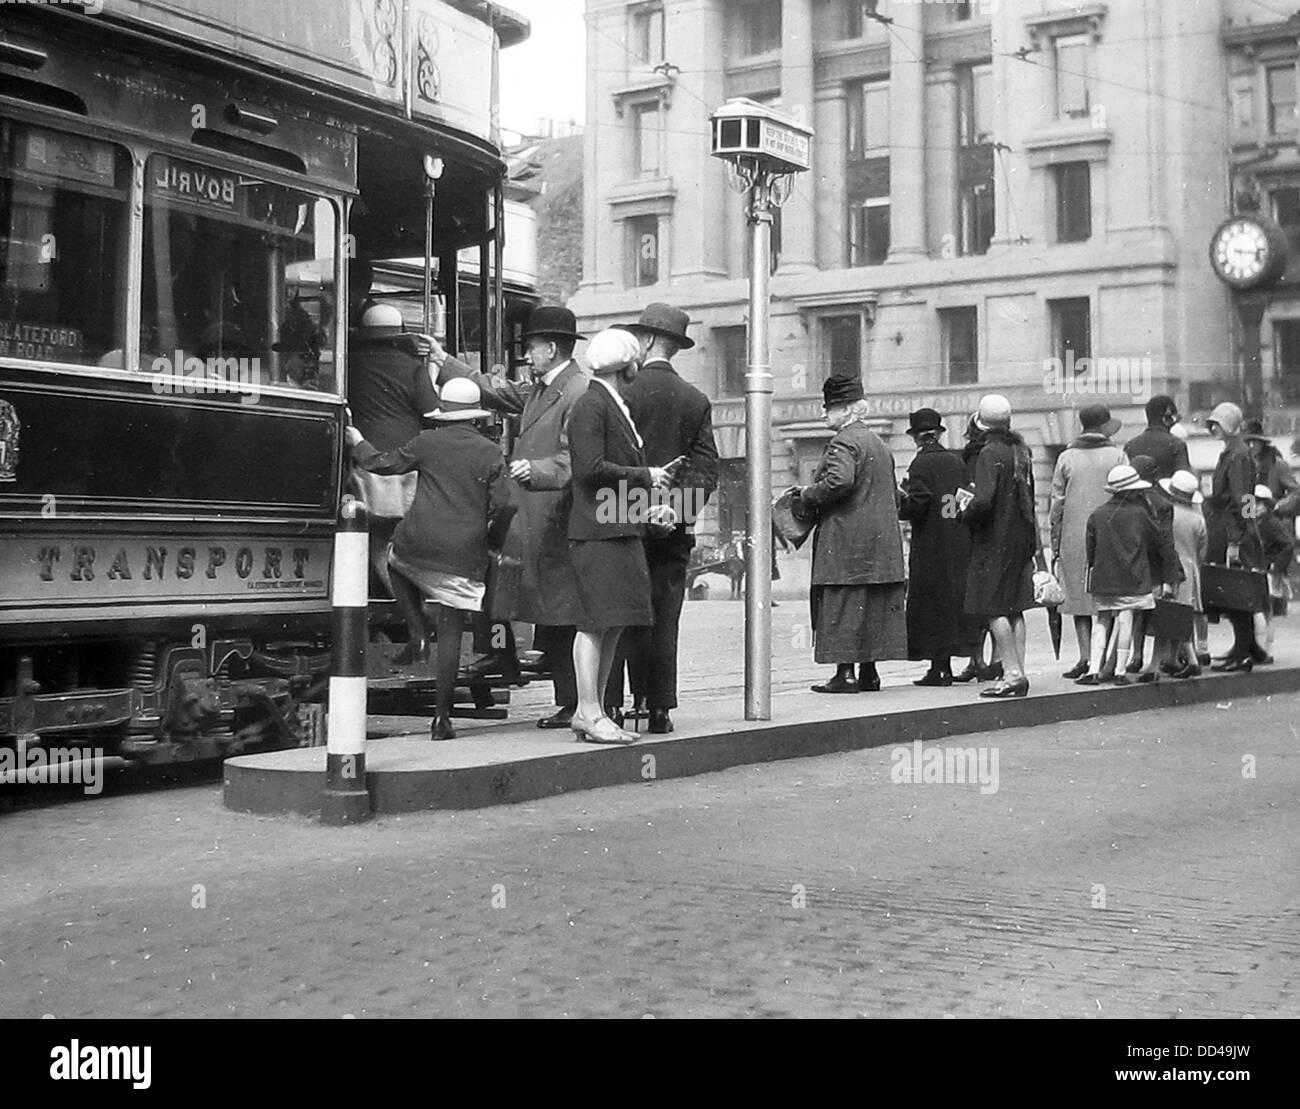 Tranvía de Edimburgo, probablemente, 1940 Foto de stock